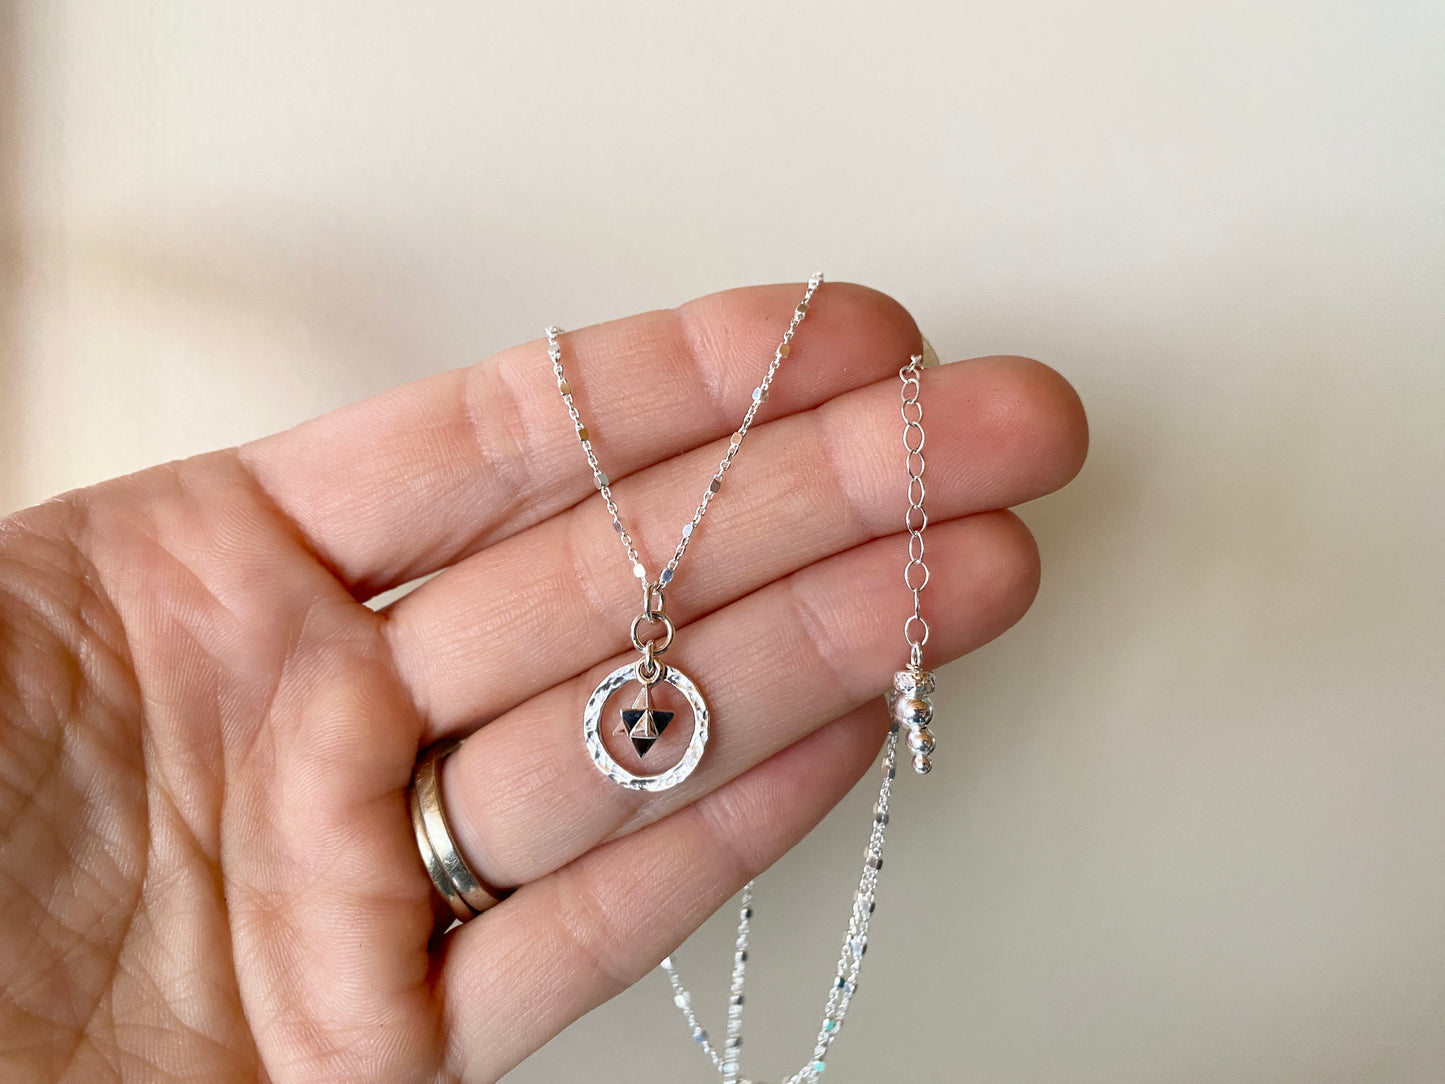 Merkaba Light ~ Sterling Silver Adjustable Charm Necklace - Sacred Symbols Series